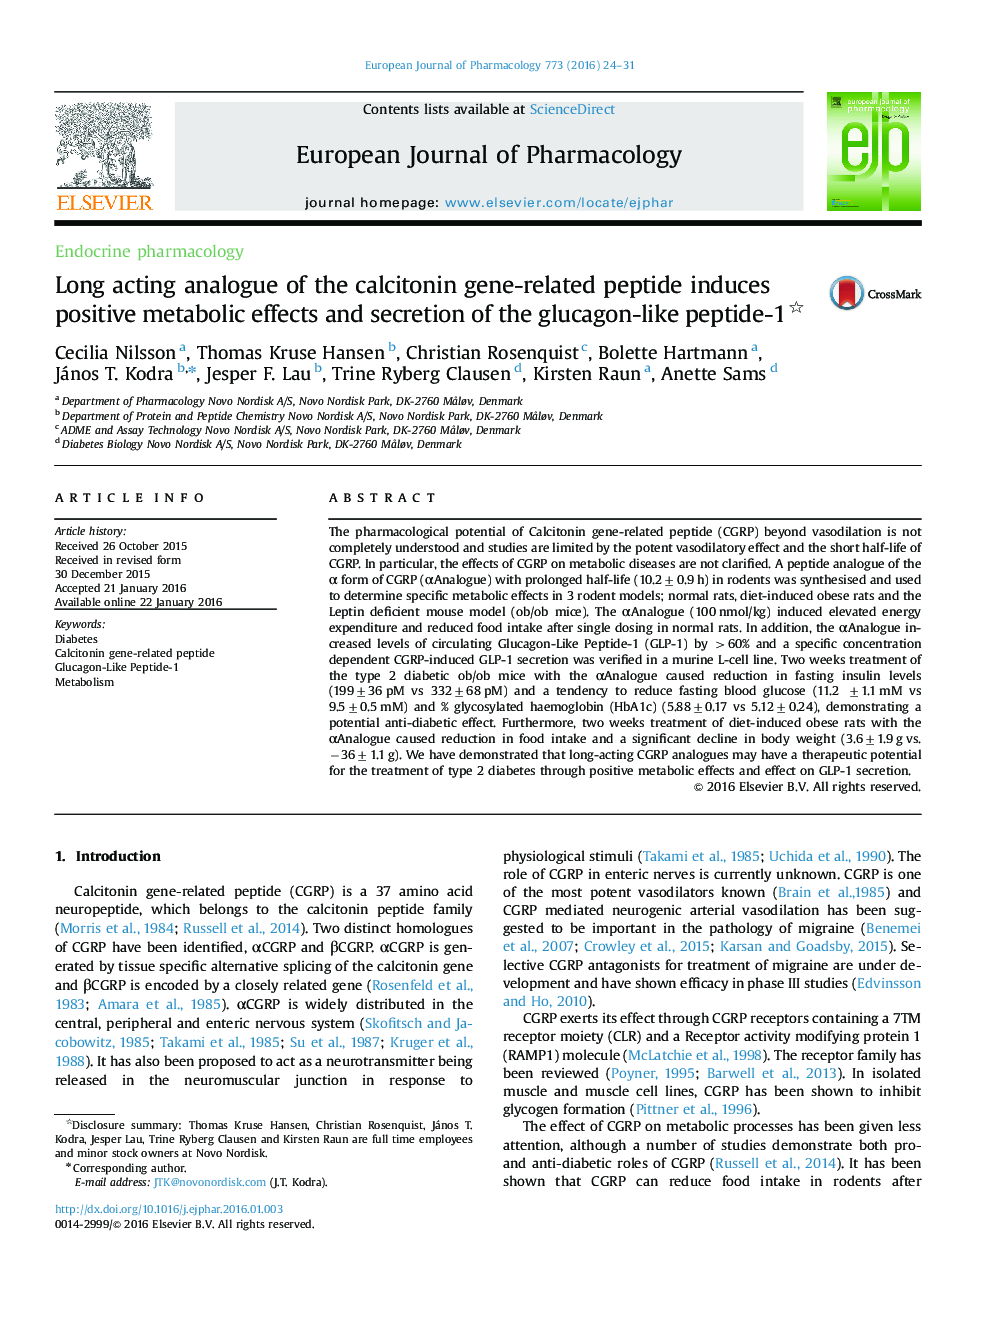 آنالوگ طولانی مدت پپتید مرتبط با ژن کلسی تونین باعث اثرات متابولیکی مثبت و ترشح پپتید 1-گلوکاگون می شود 